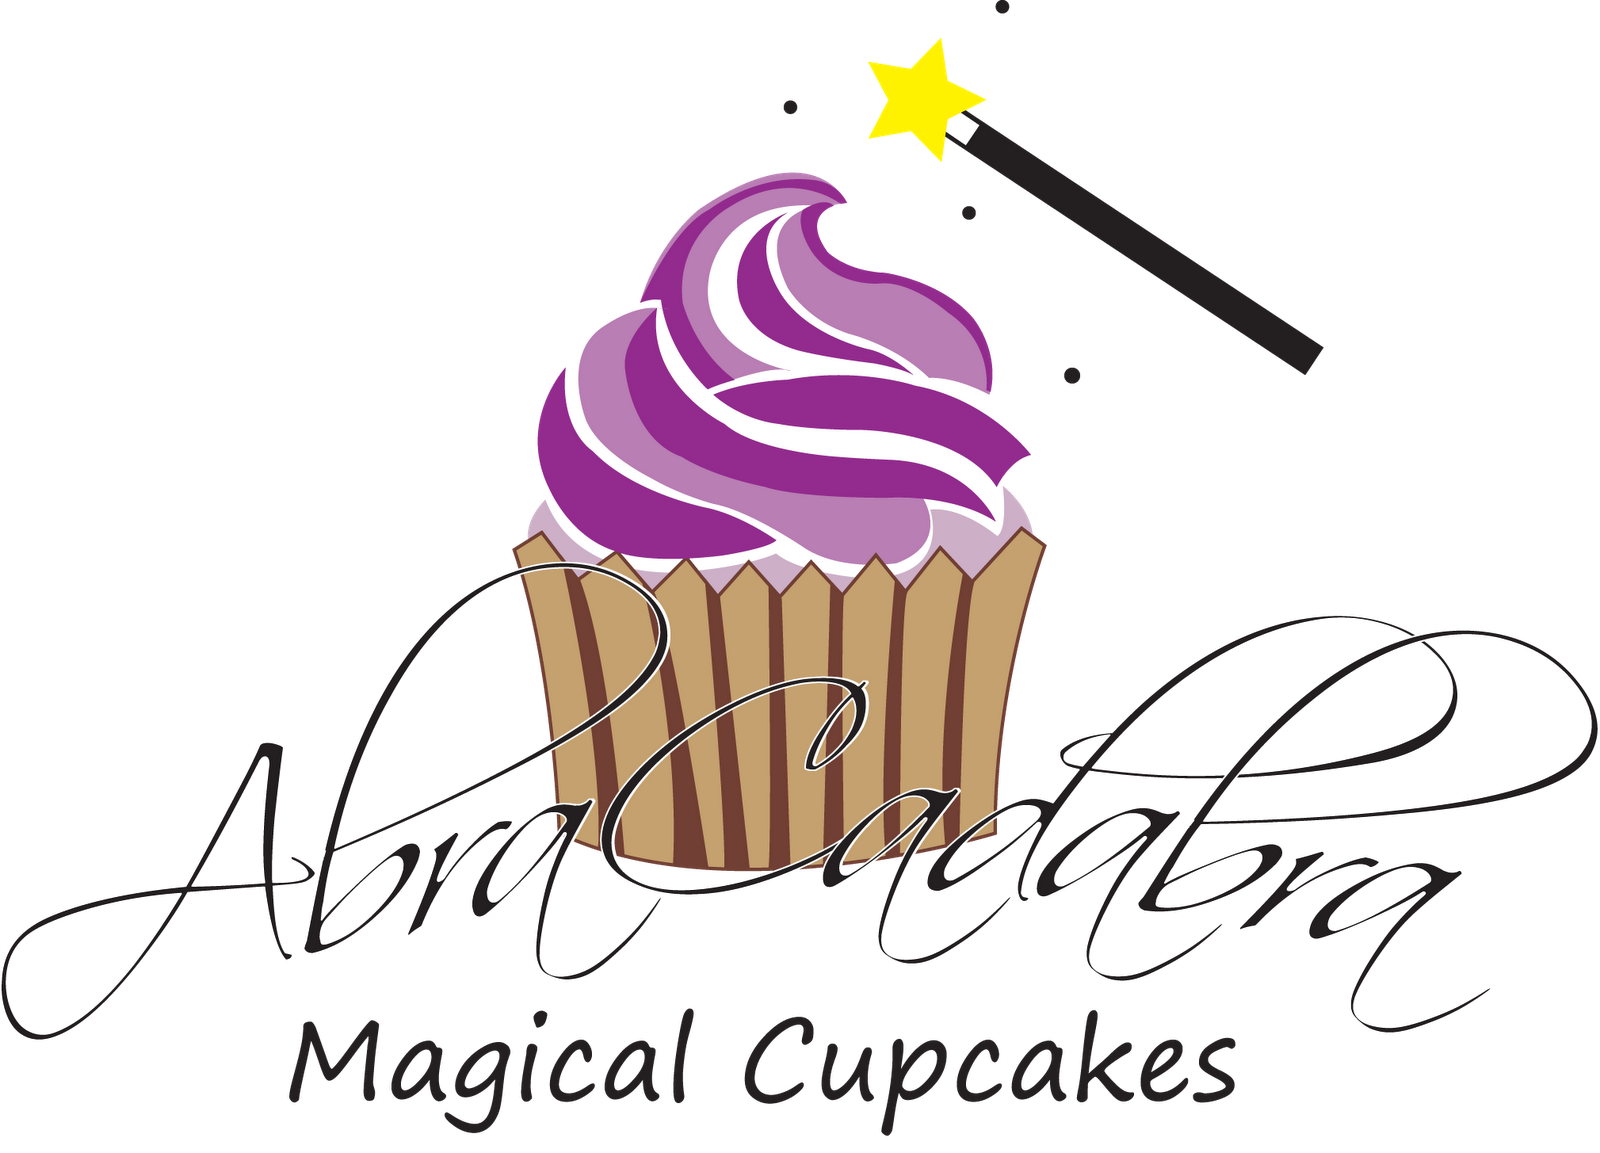 Abracadabra Magical Cupcakes